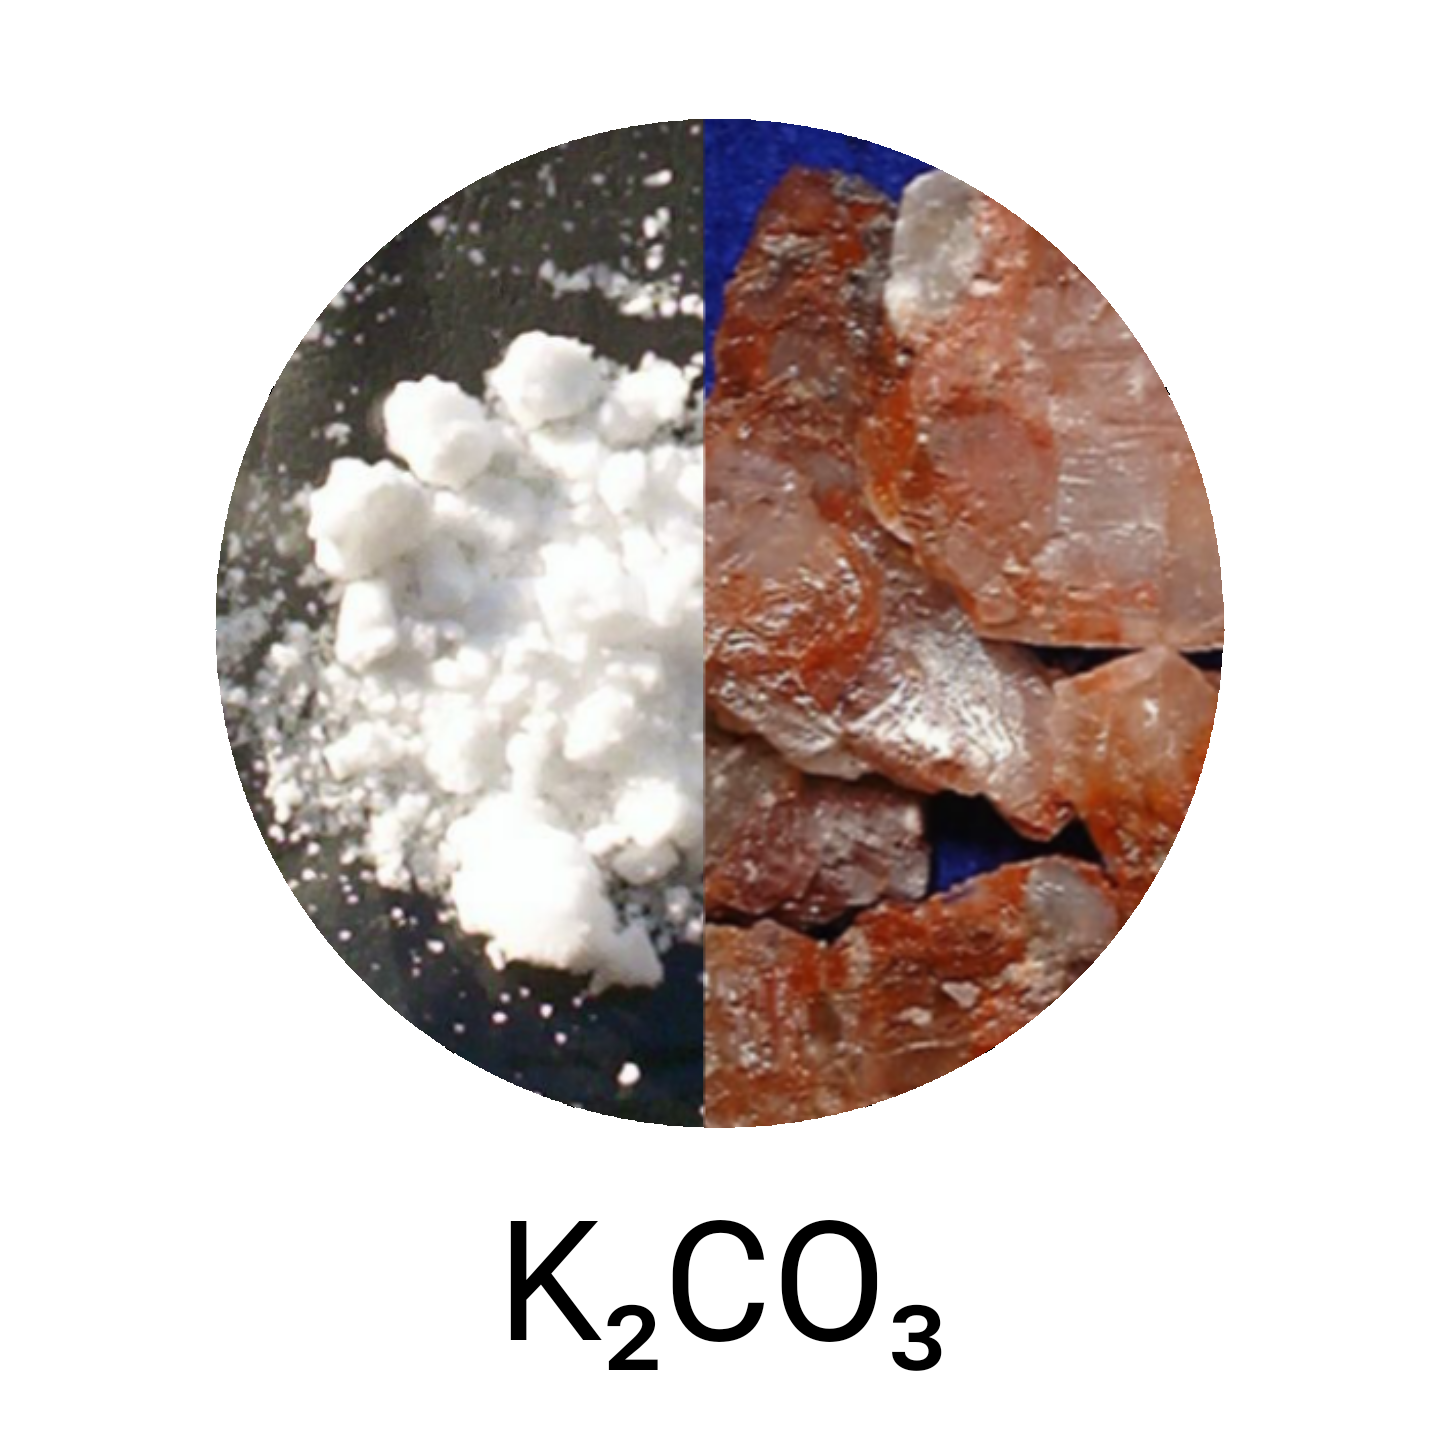 K2co3 поташ. Поташ k2co3 – карбонат калия. Поташ соль. Поташ для изготовления стекла. Карбонат калия это соль.